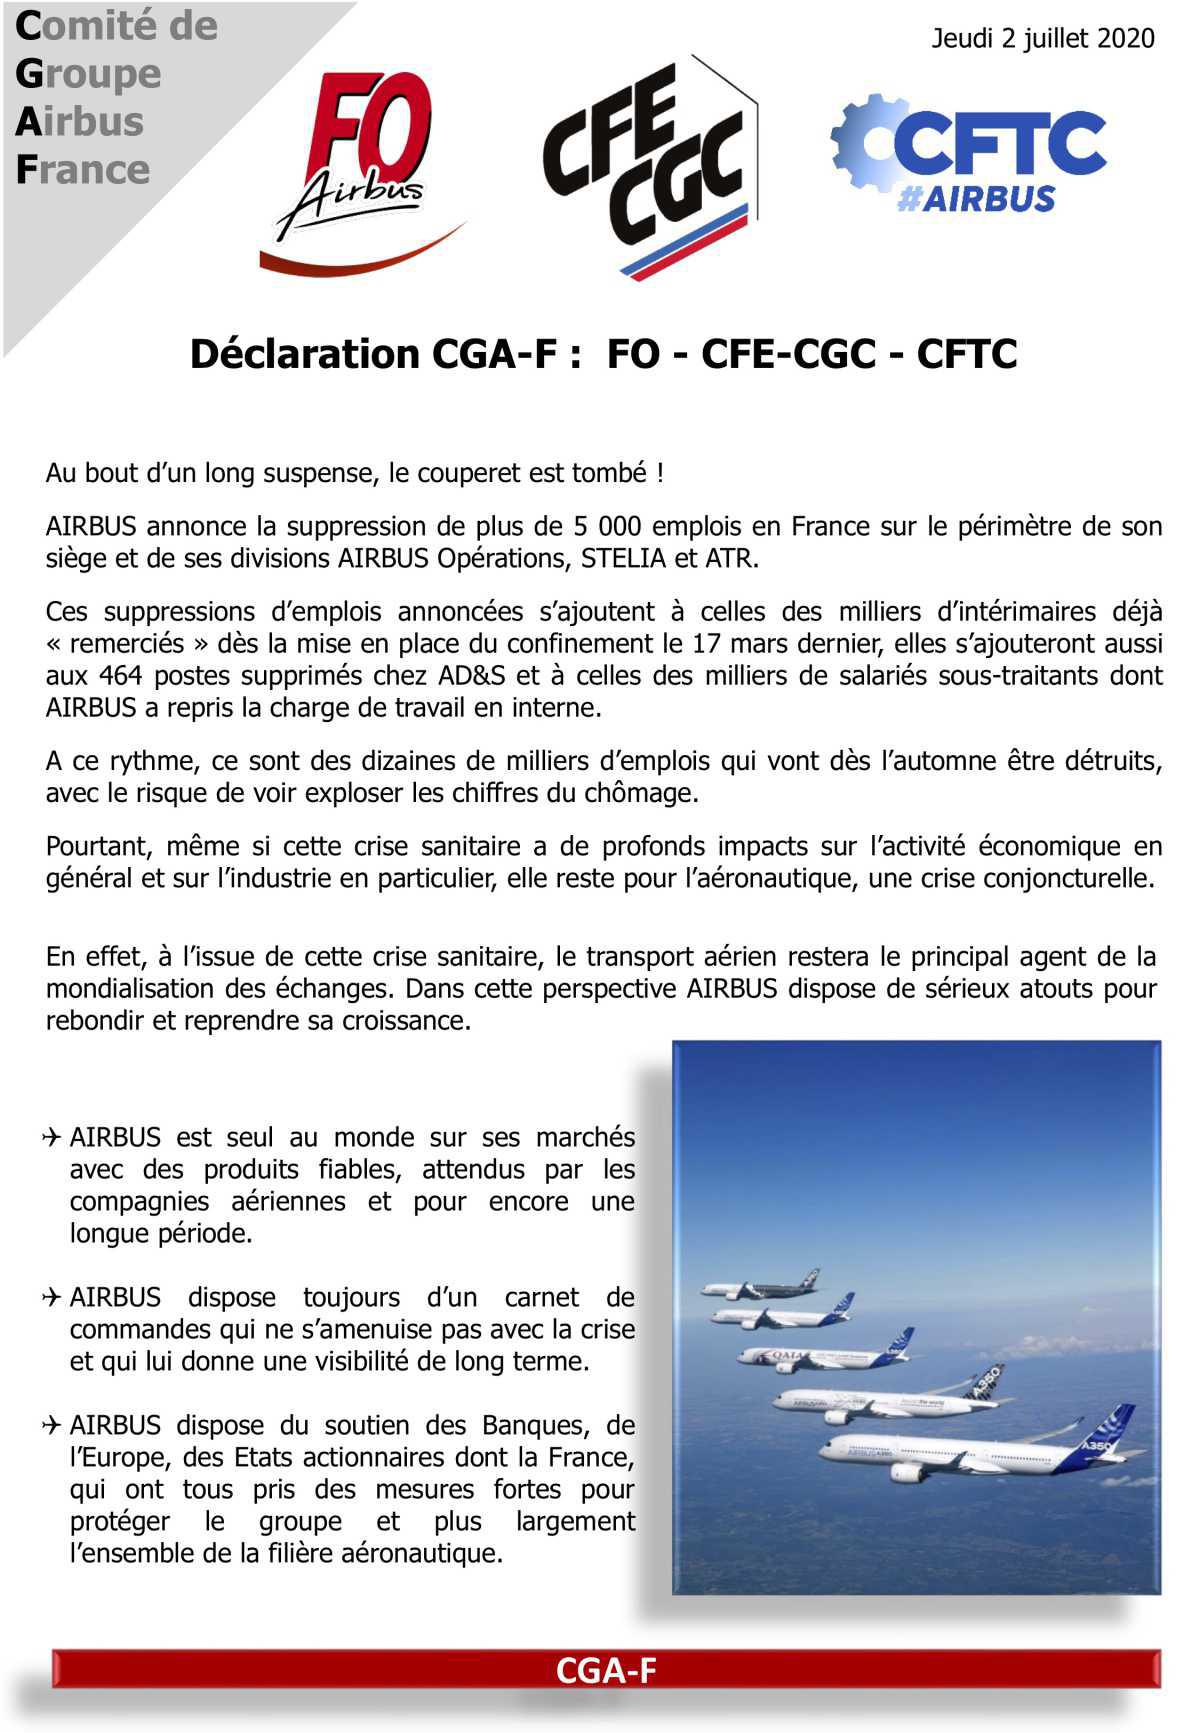 Déclaration lue en CGAF par FO Airbus